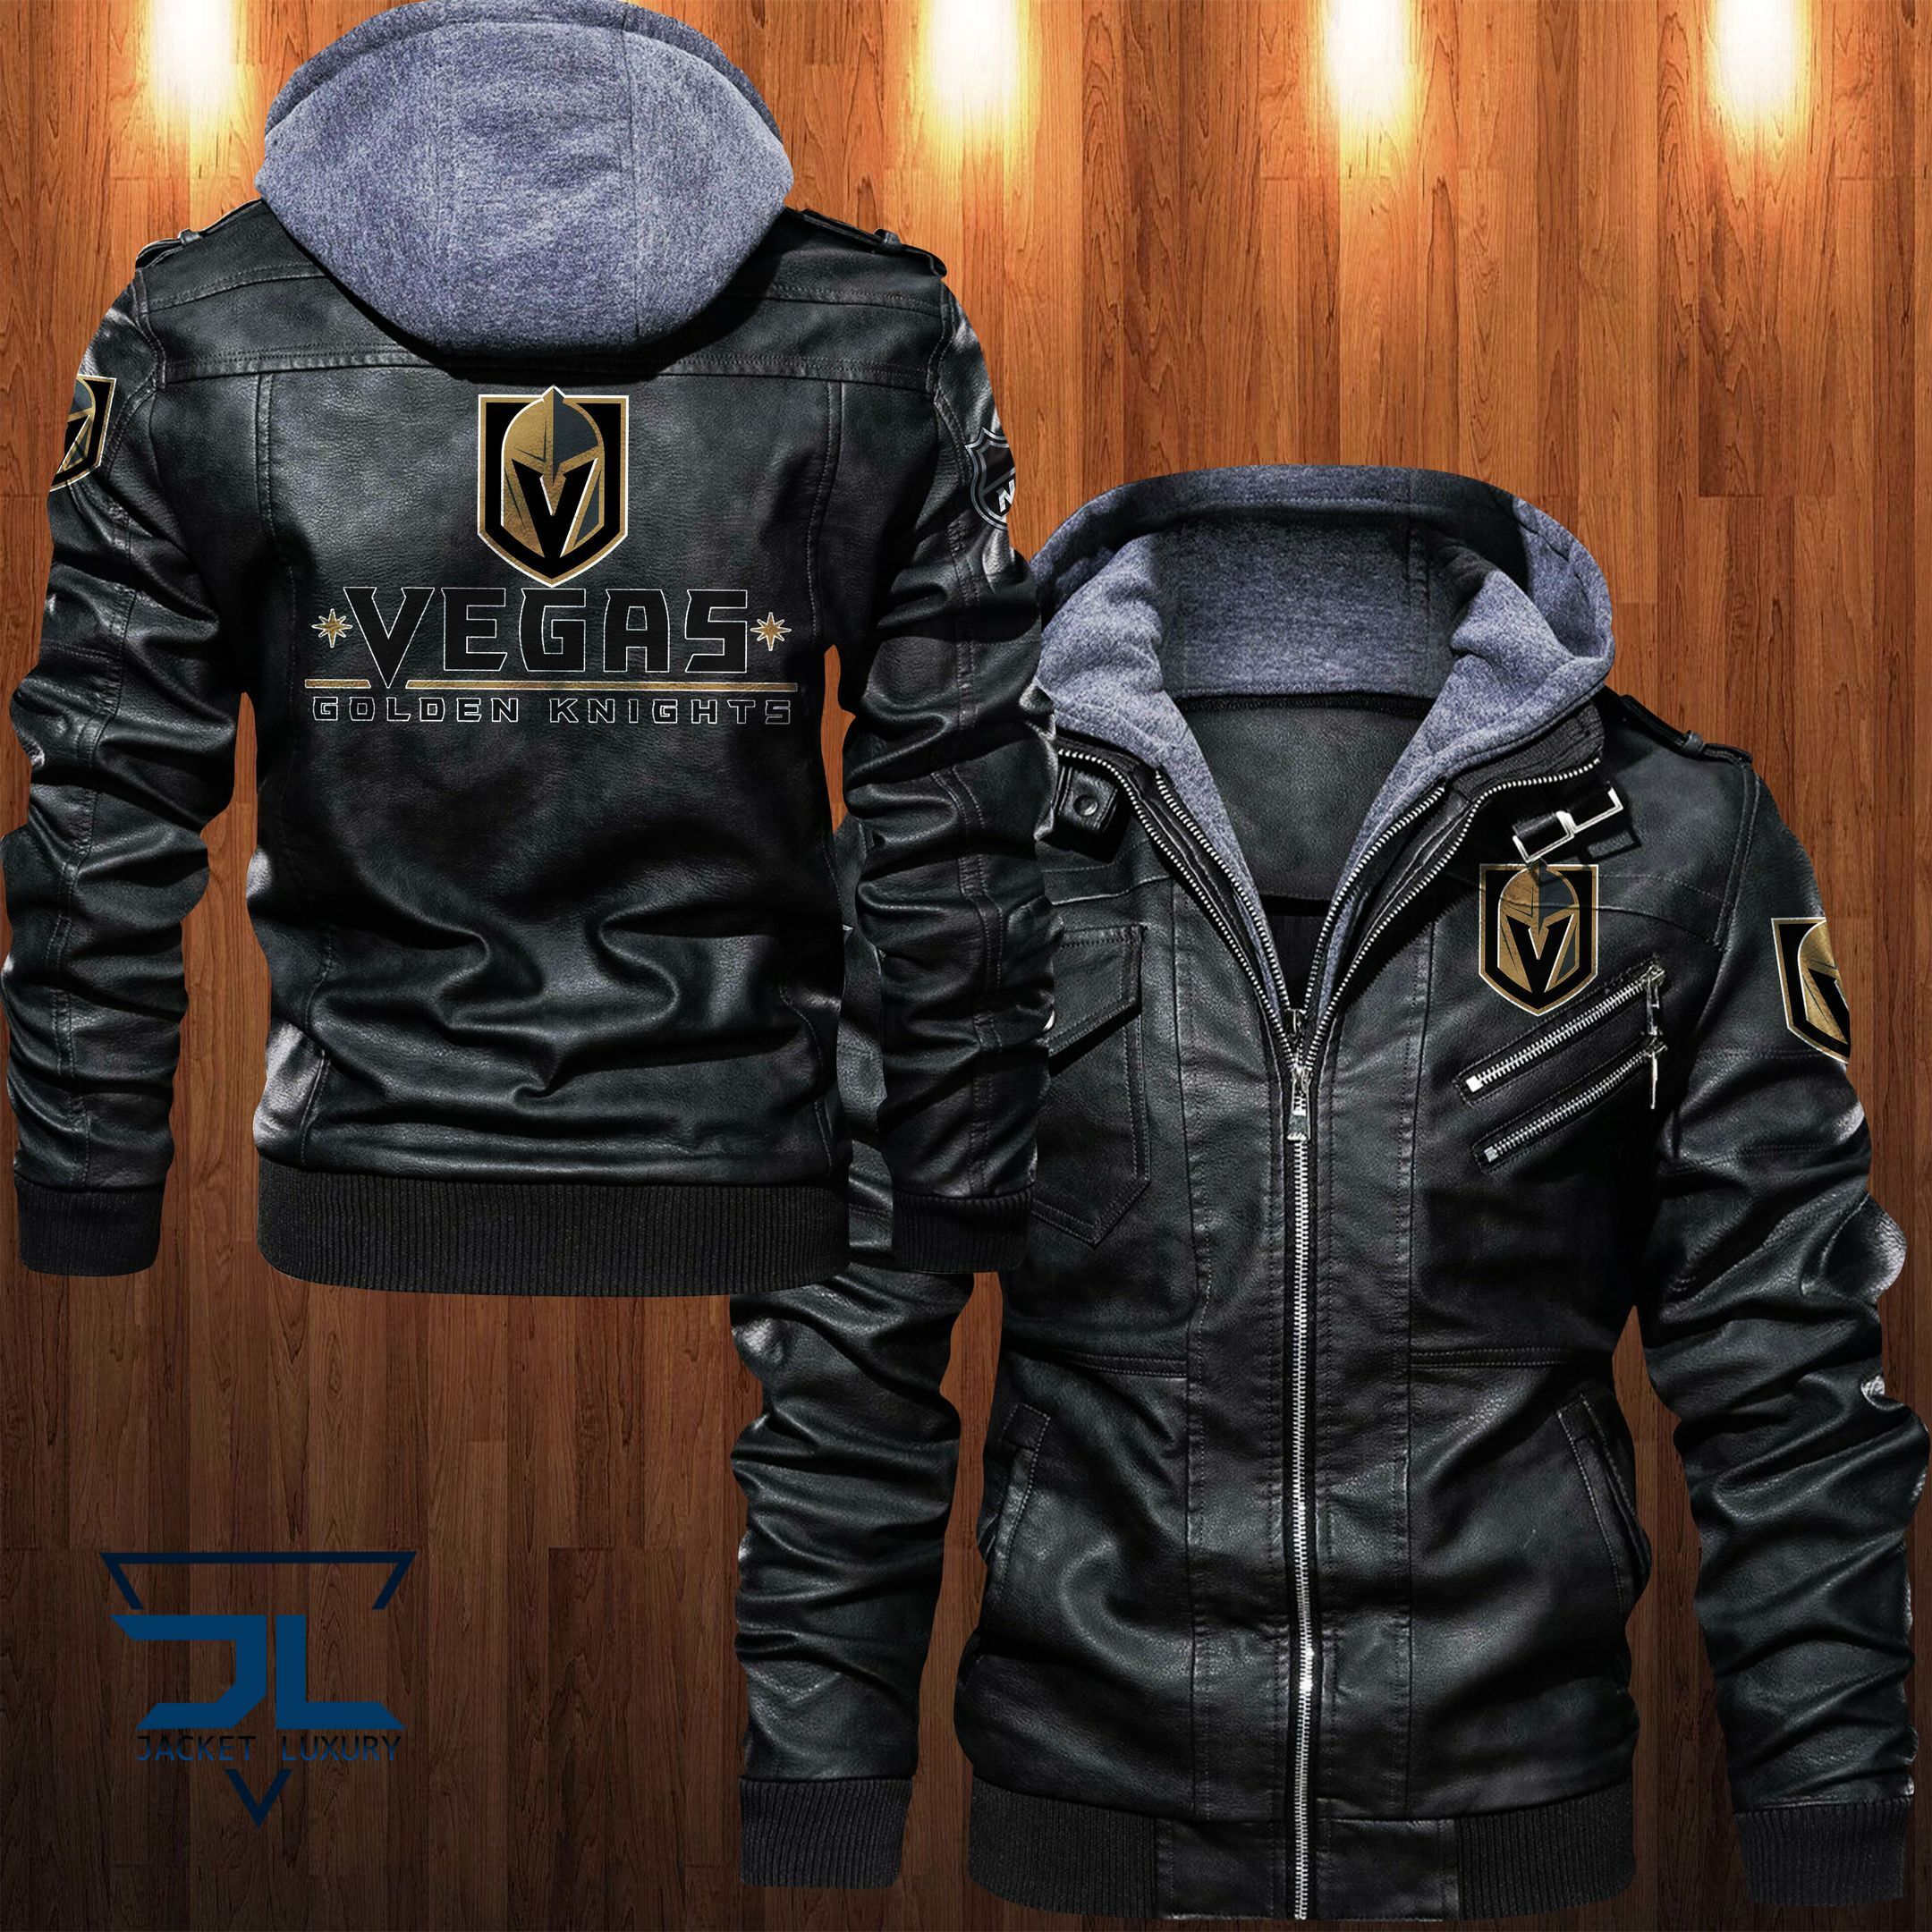 Get the best jackets under $100! 355